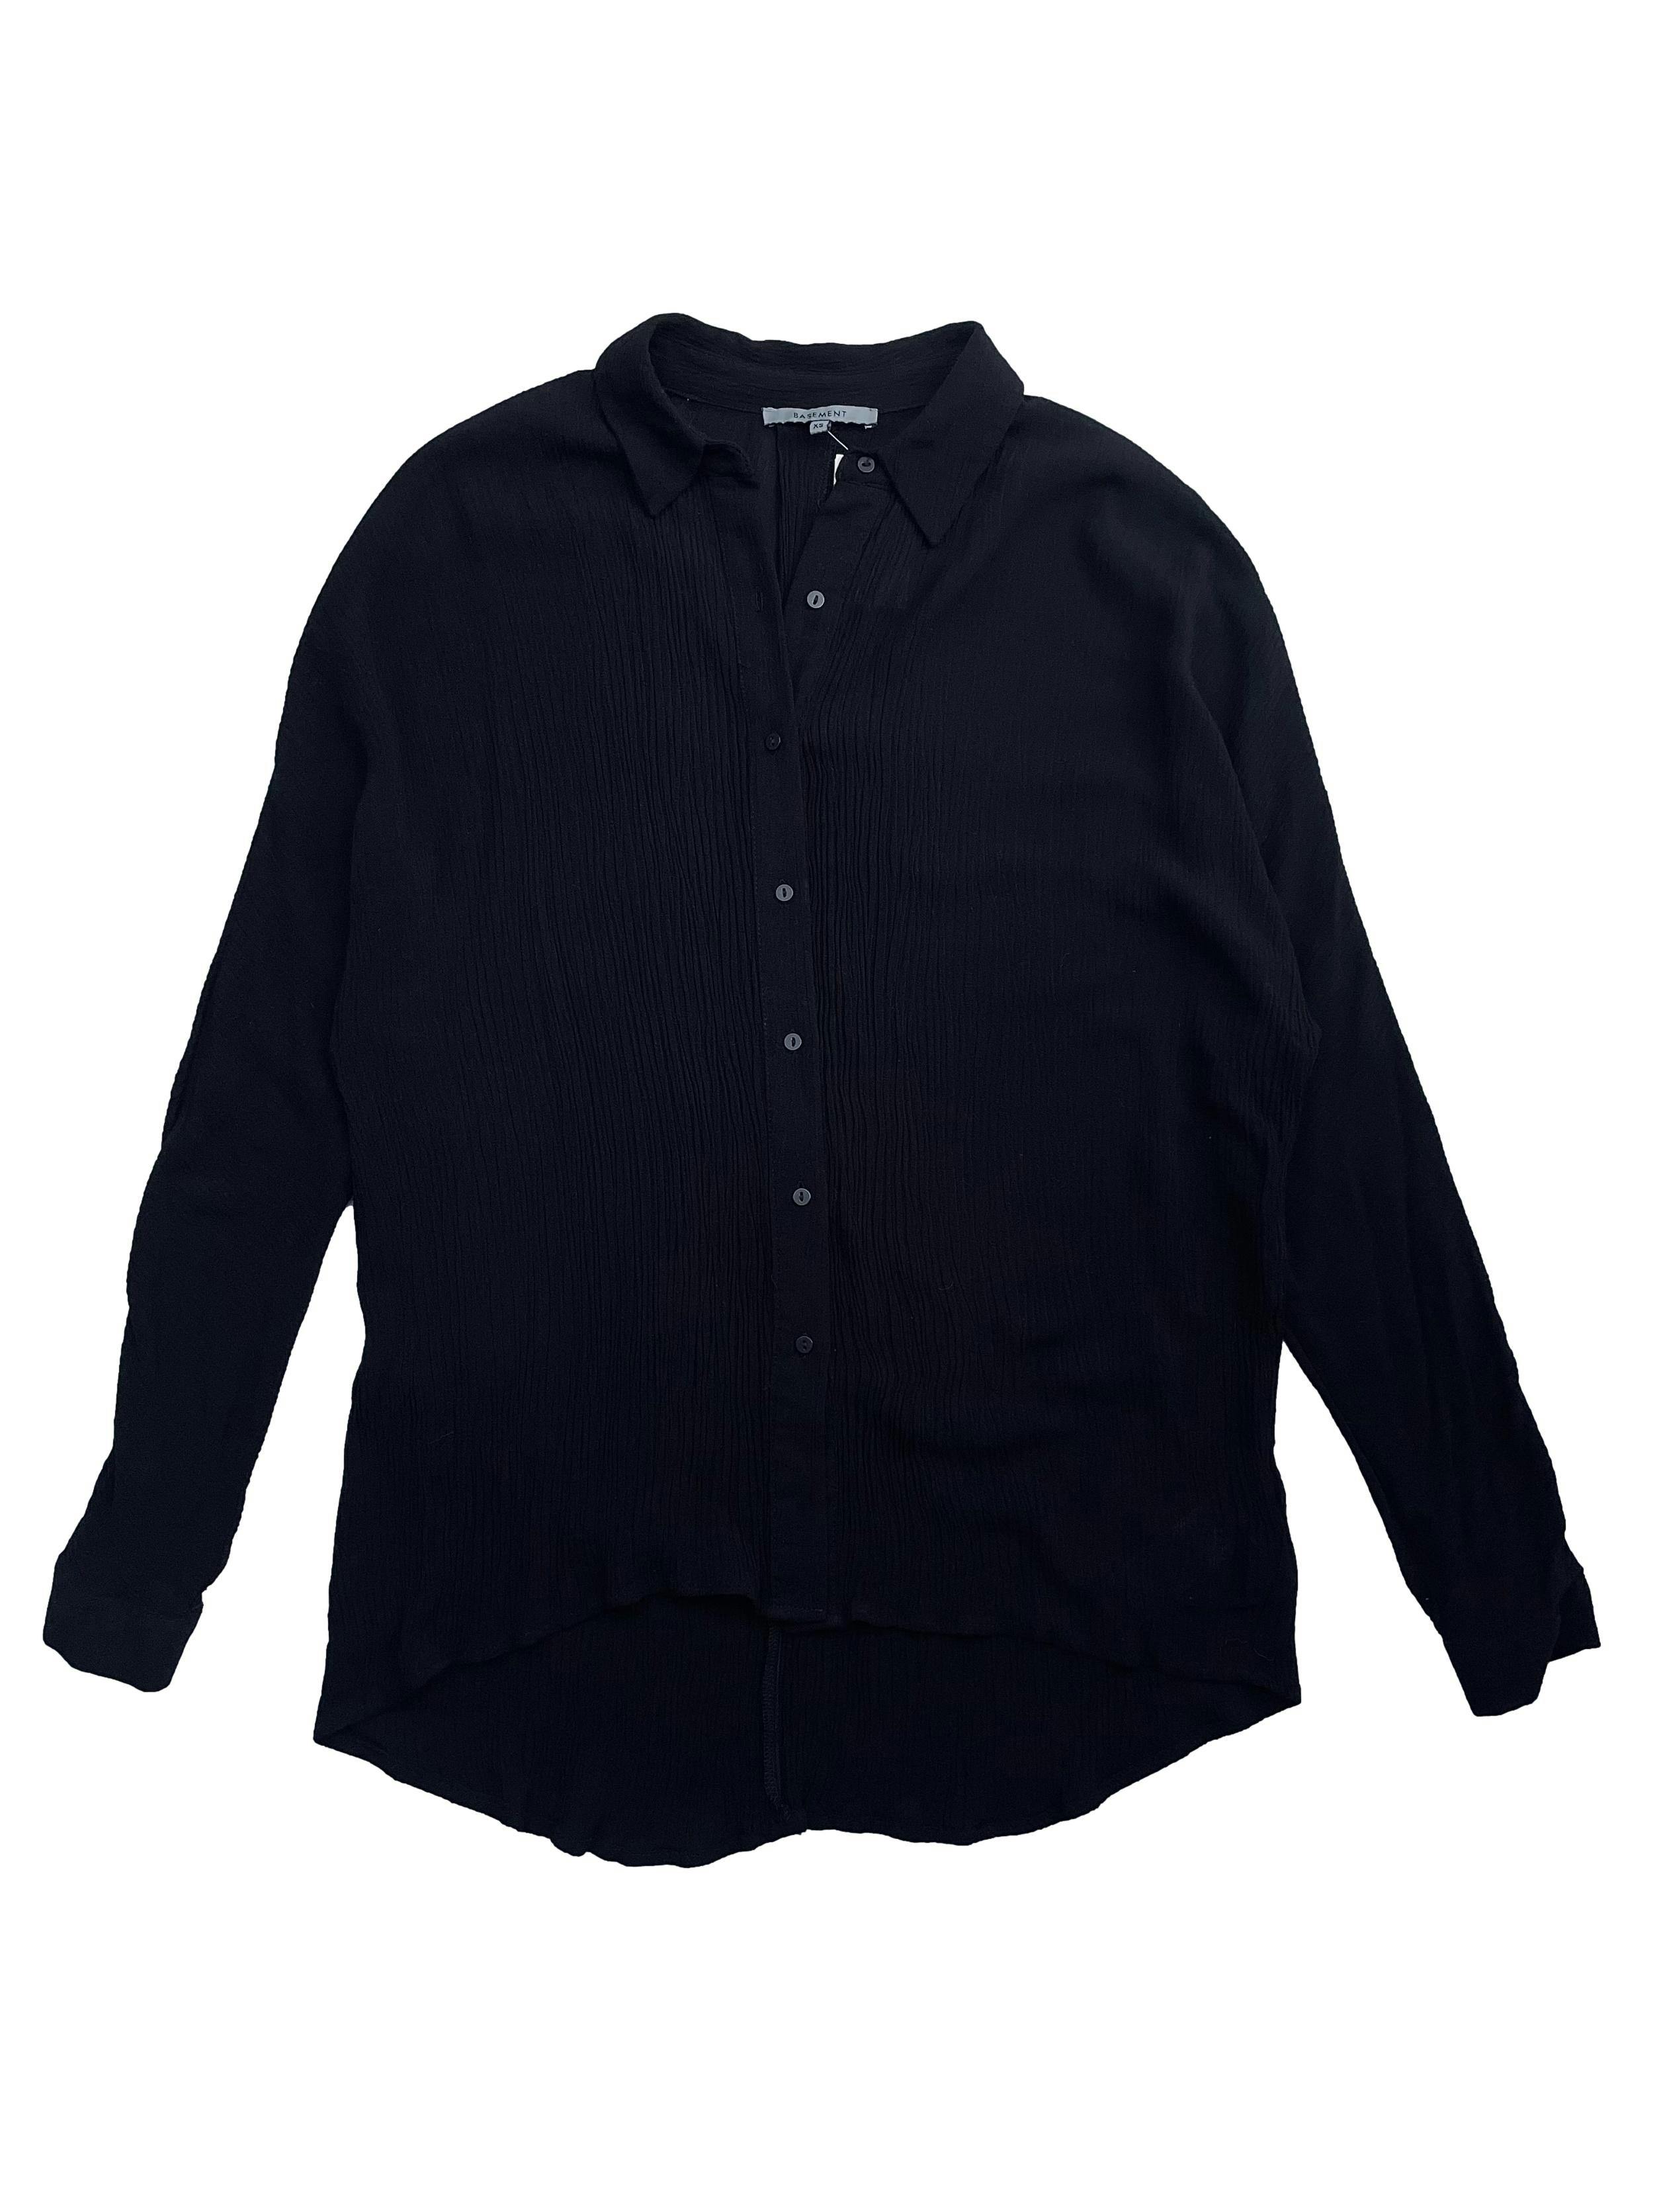 Blusa oversized Basement, negra con, manga larga, con textura, botones delanteros y en puños Busto: 100 cm, Largo: 63cm